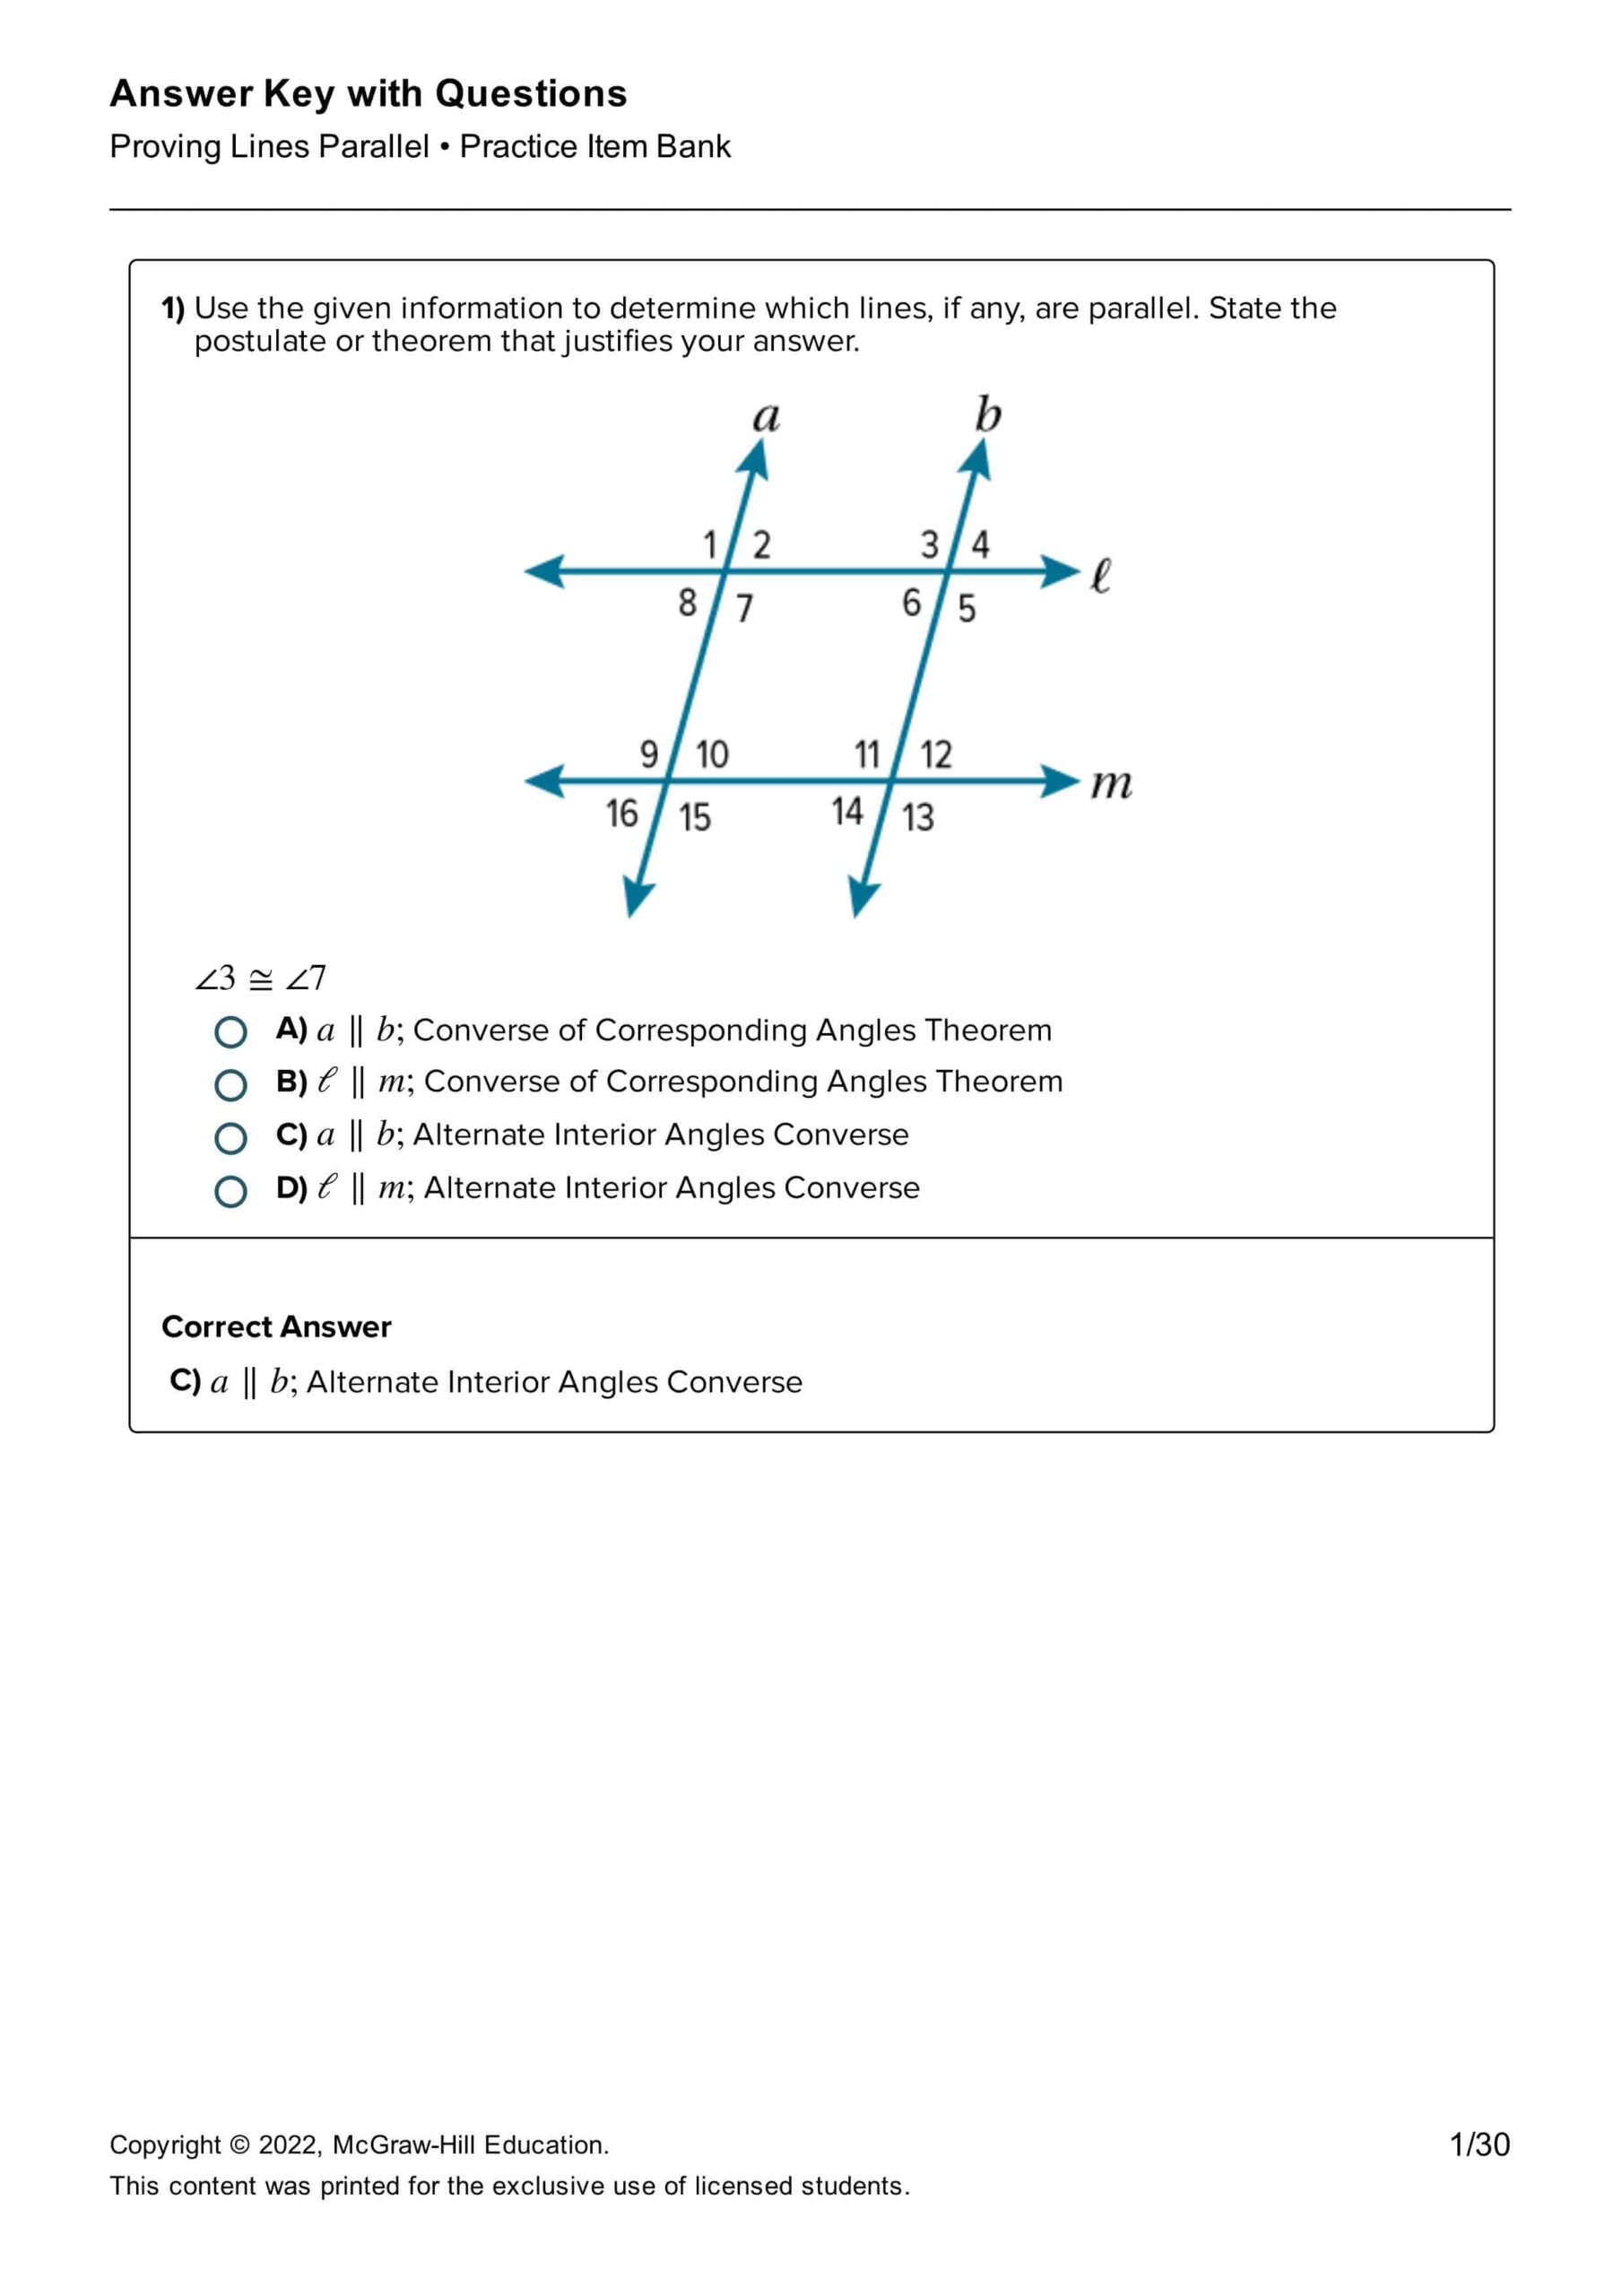 حل أوراق عمل Proving Lines Parallel الرياضيات المتكاملة الصف التاسع